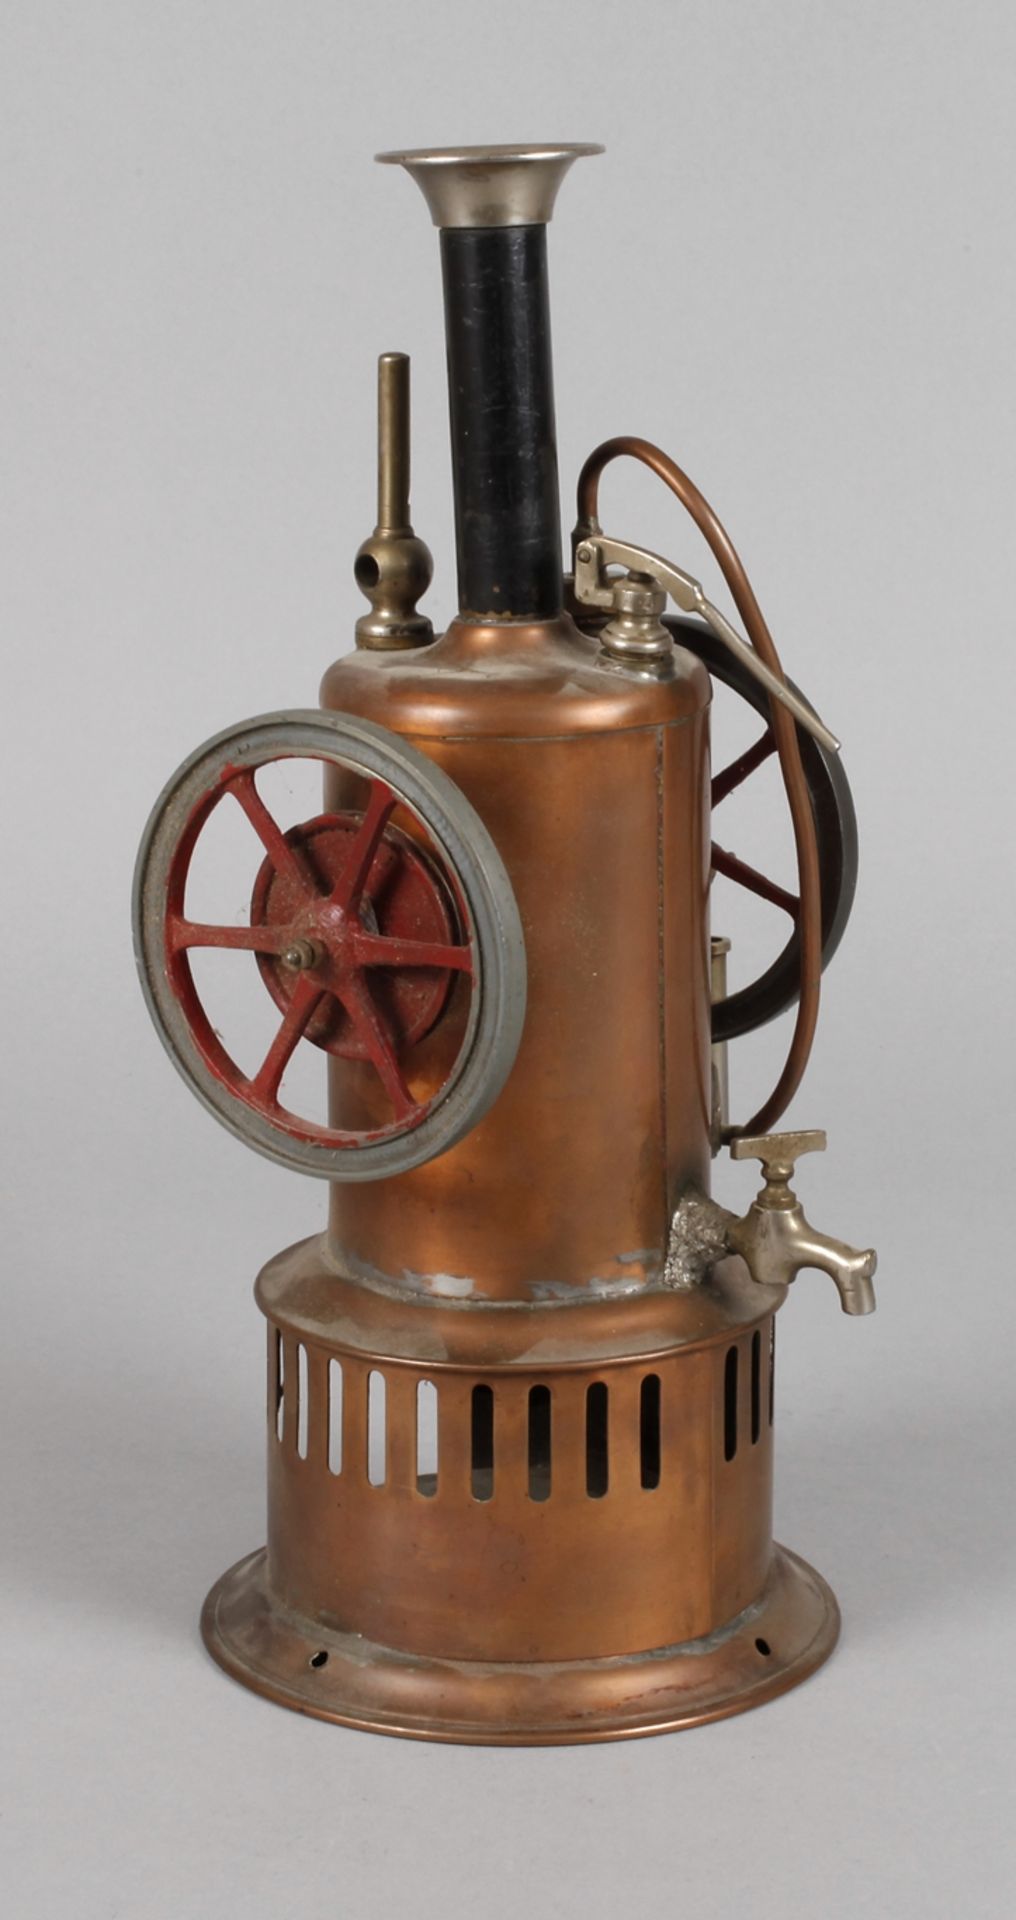 Stehende Dampfmaschineum 1900, ungemarkt, Kupferblech und Eisenguss lackiert bzw. blanke Teile